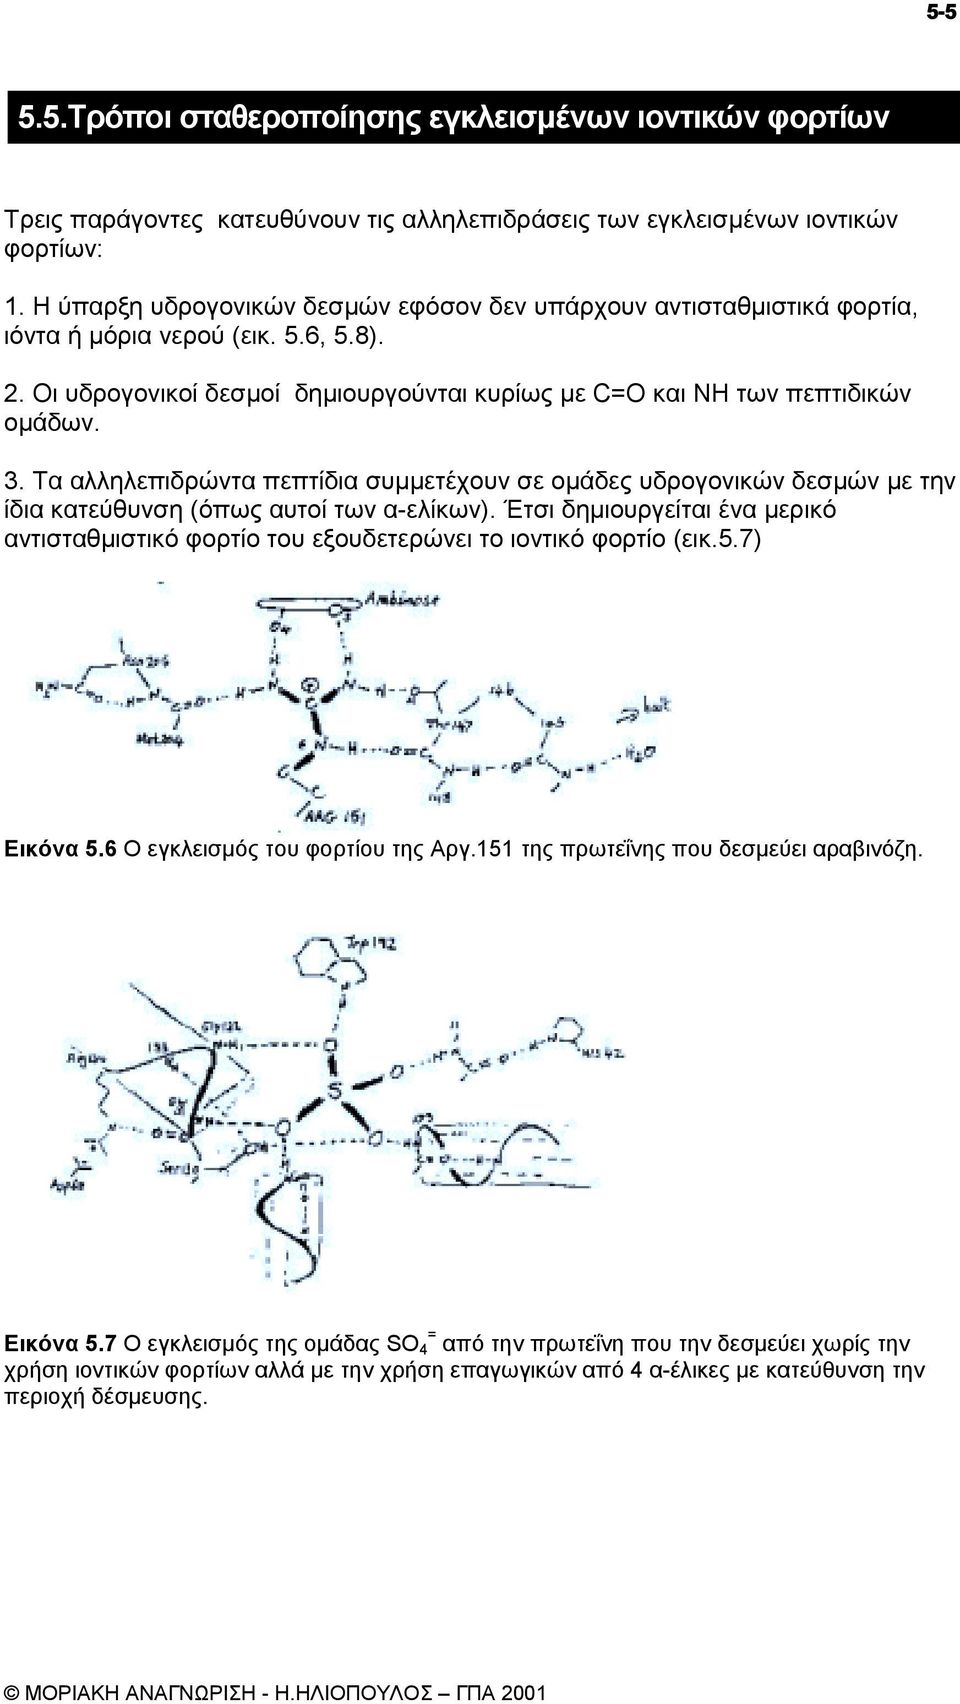 Τα αλληλεπιδρώντα πεπτίδια συµµετέχουν σε οµάδες υδρογονικών δεσµών µε την ίδια κατεύθυνση (όπως αυτοί των α-ελίκων).